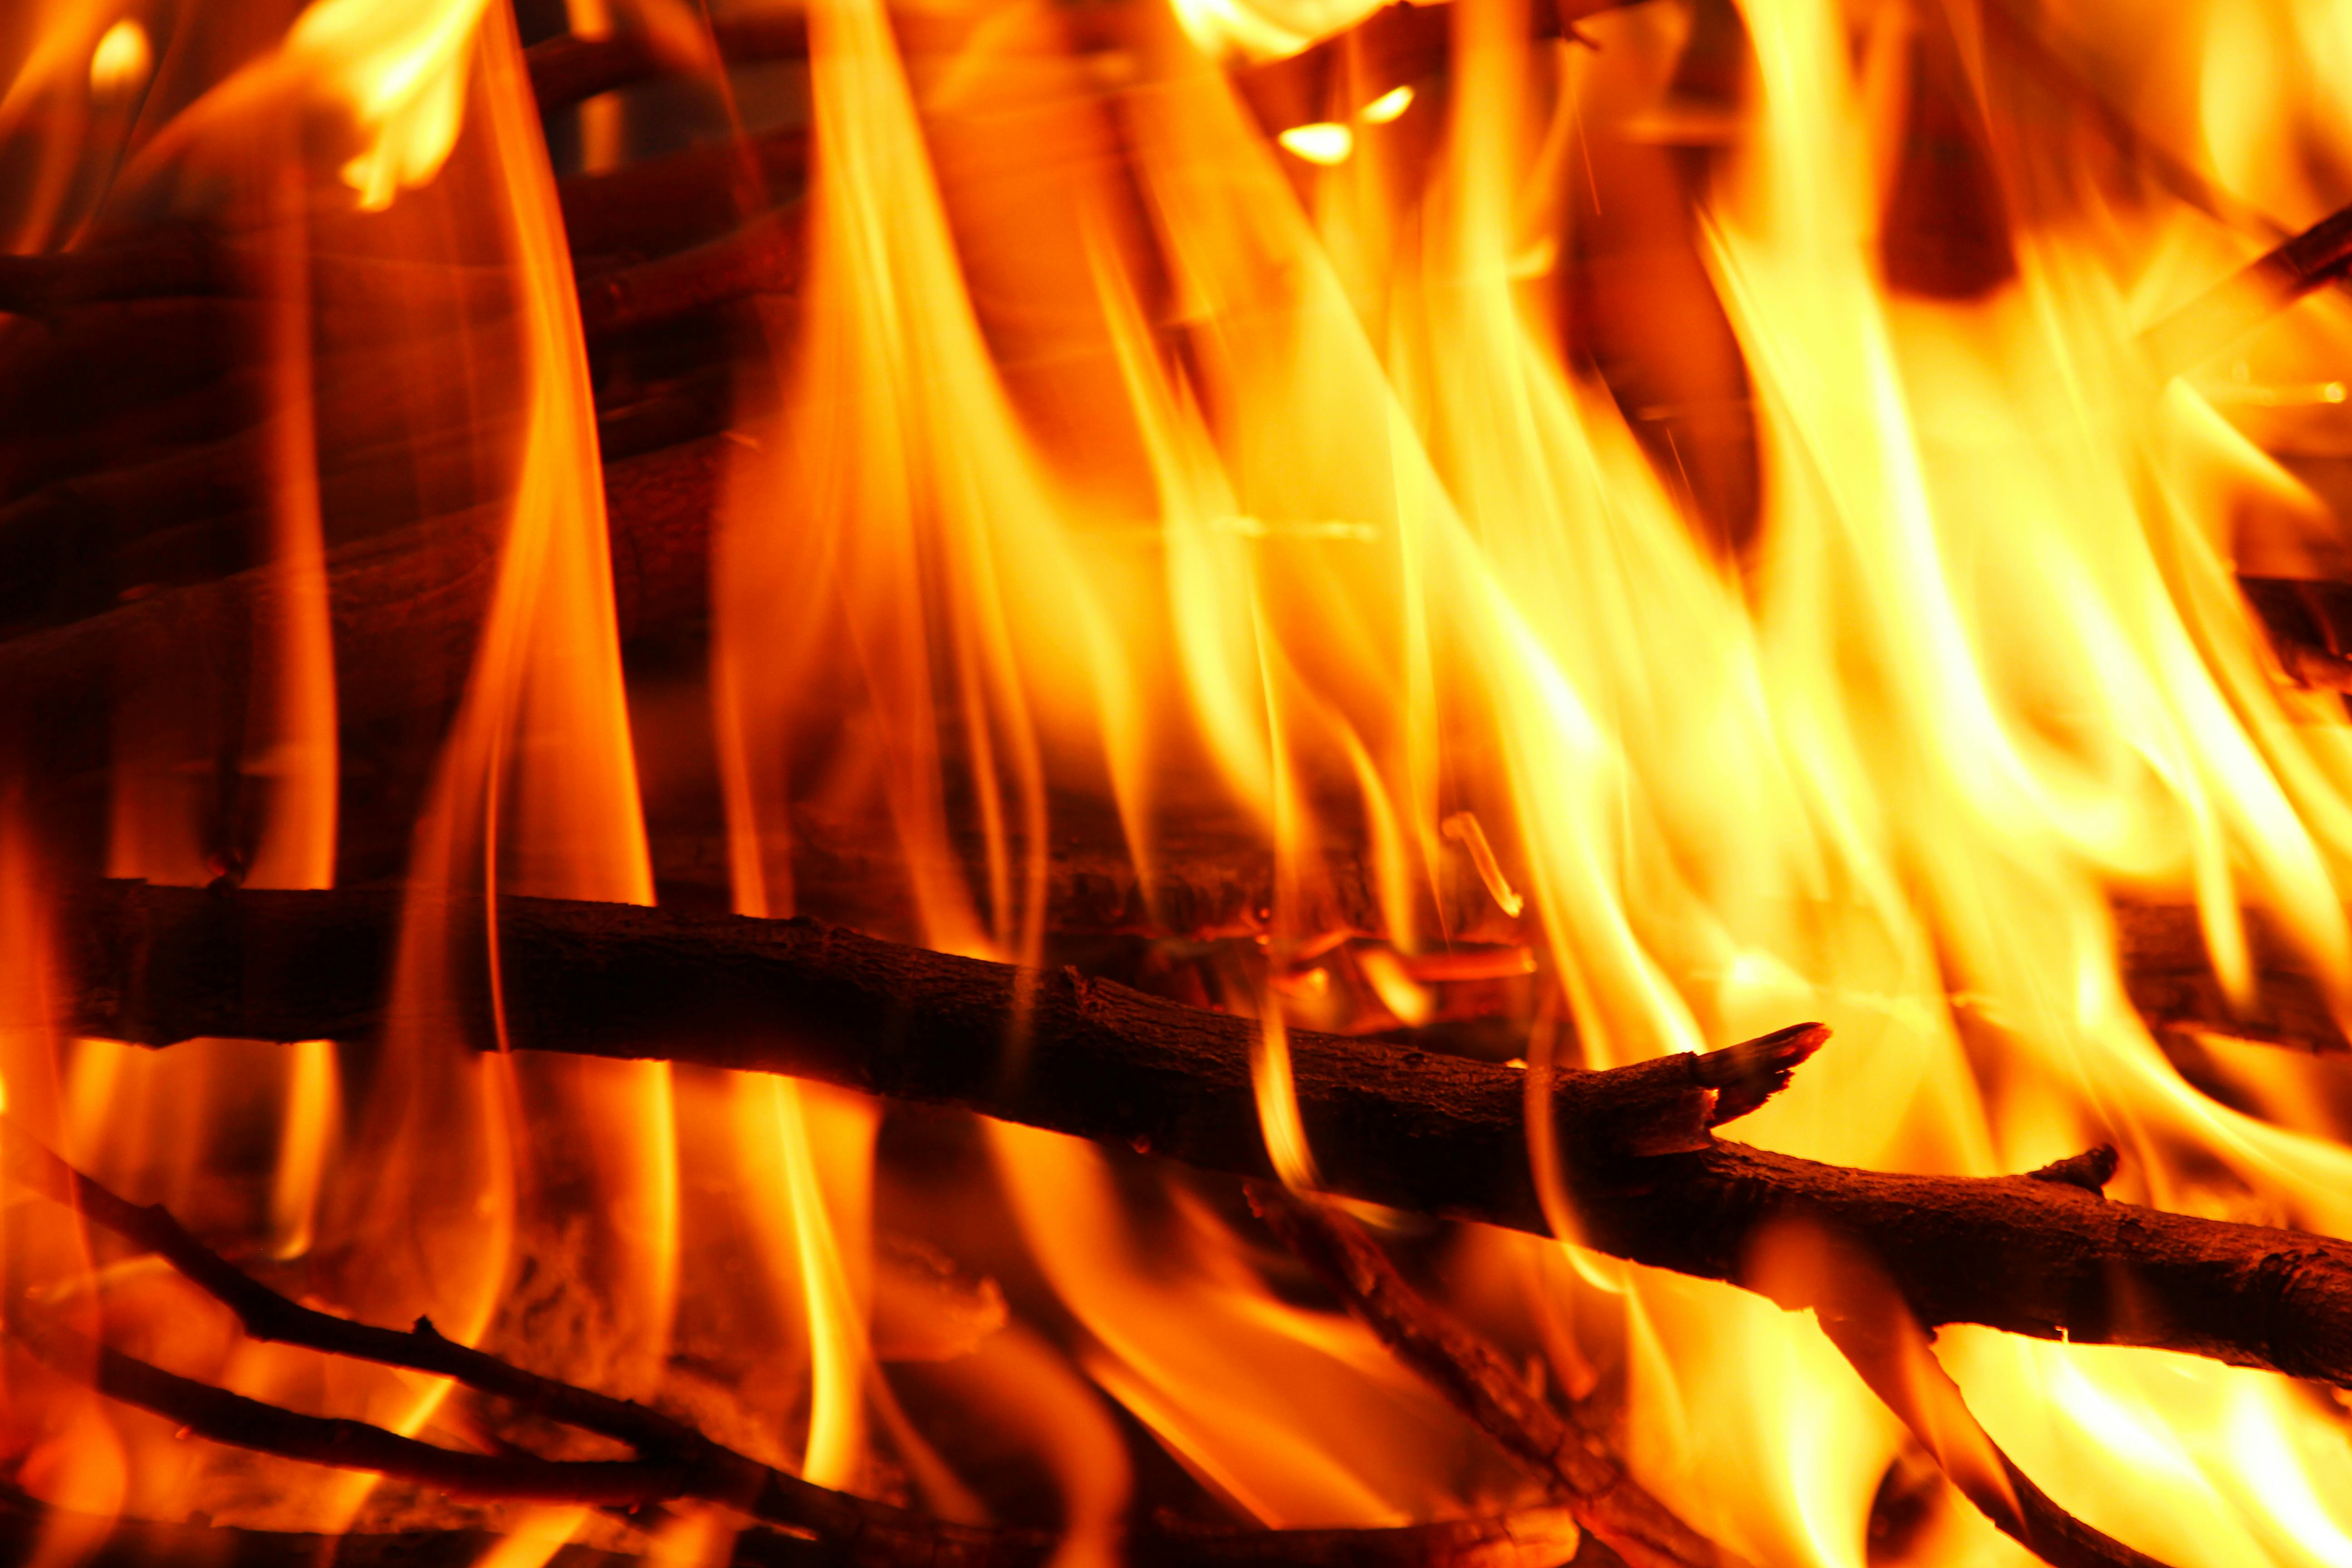 Burning fire on black background · Free Stock Photo